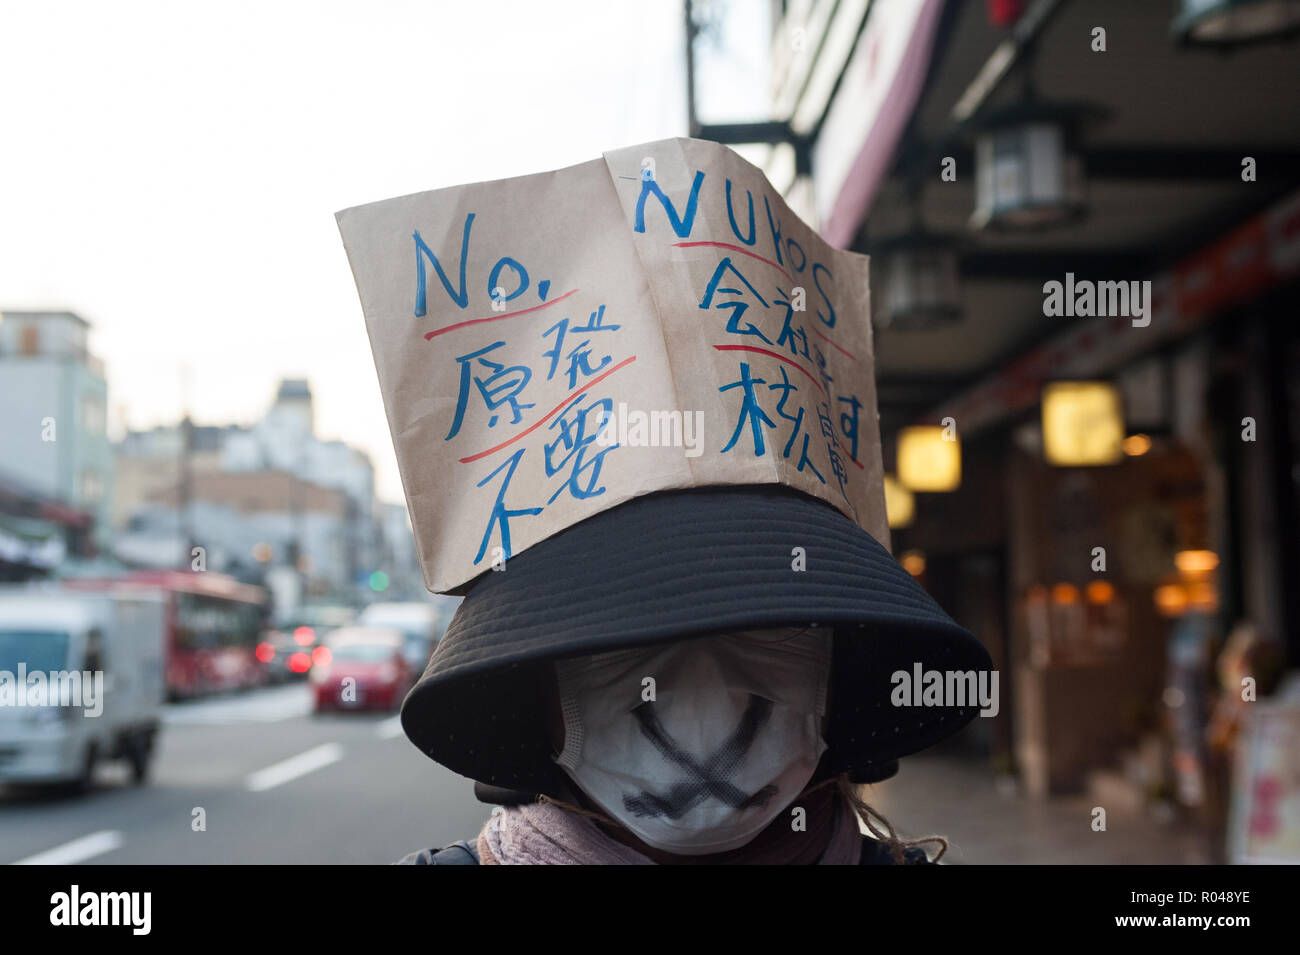 Kyoto, Giappone, una donna che manifestano contro le armi nucleari Foto Stock